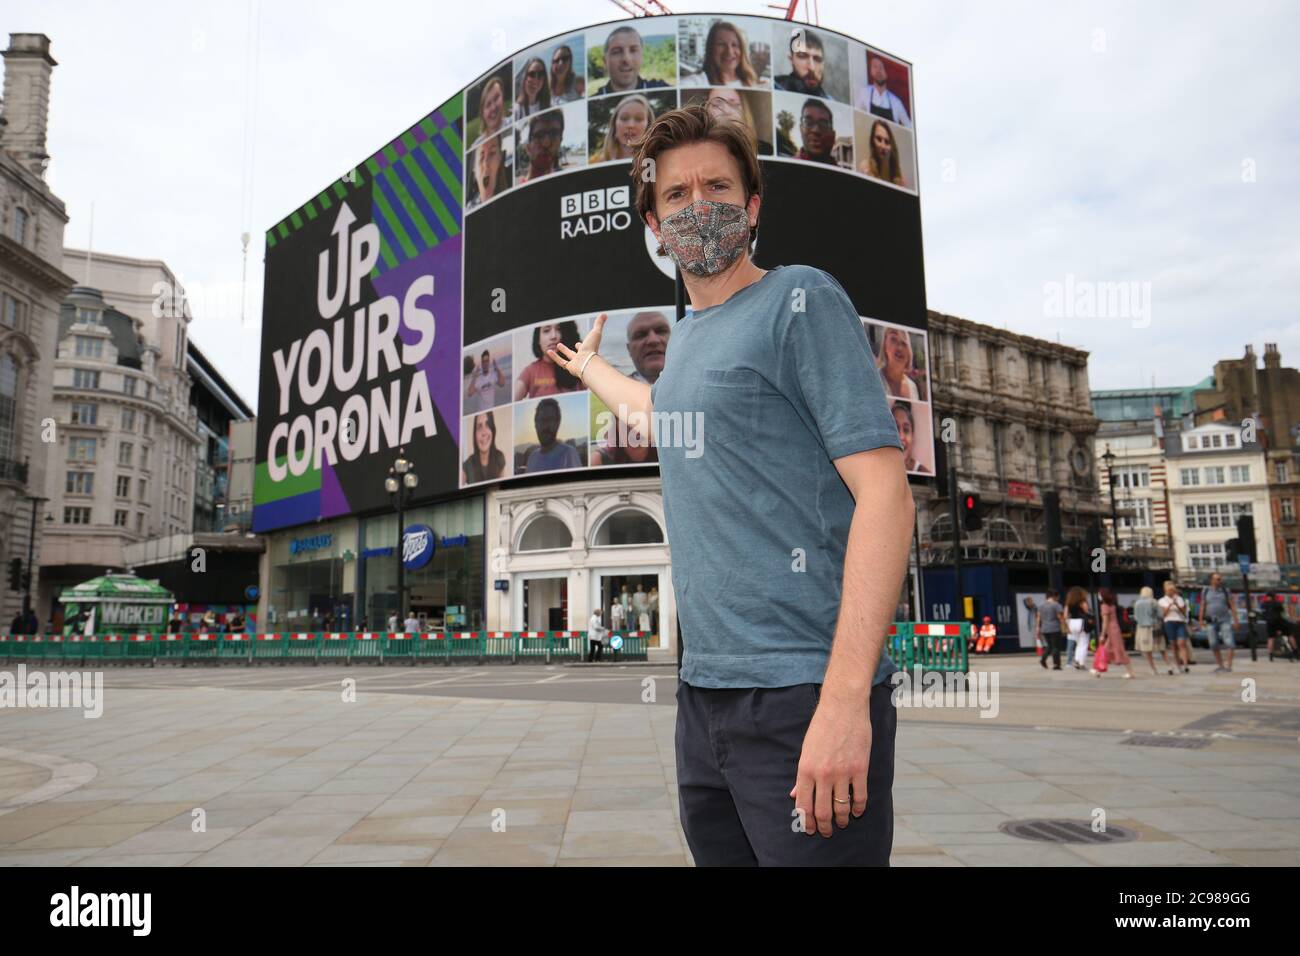 BBC radio 1 DJ Greg James a Piccadilly Circus, Londra, mentre la campagna radio 1 "Up Your Corona" viene visualizzata sullo schermo Piccadilly Lights. Il display di 10 minuti è caratterizzato da una persona di ogni paese del mondo. Foto Stock